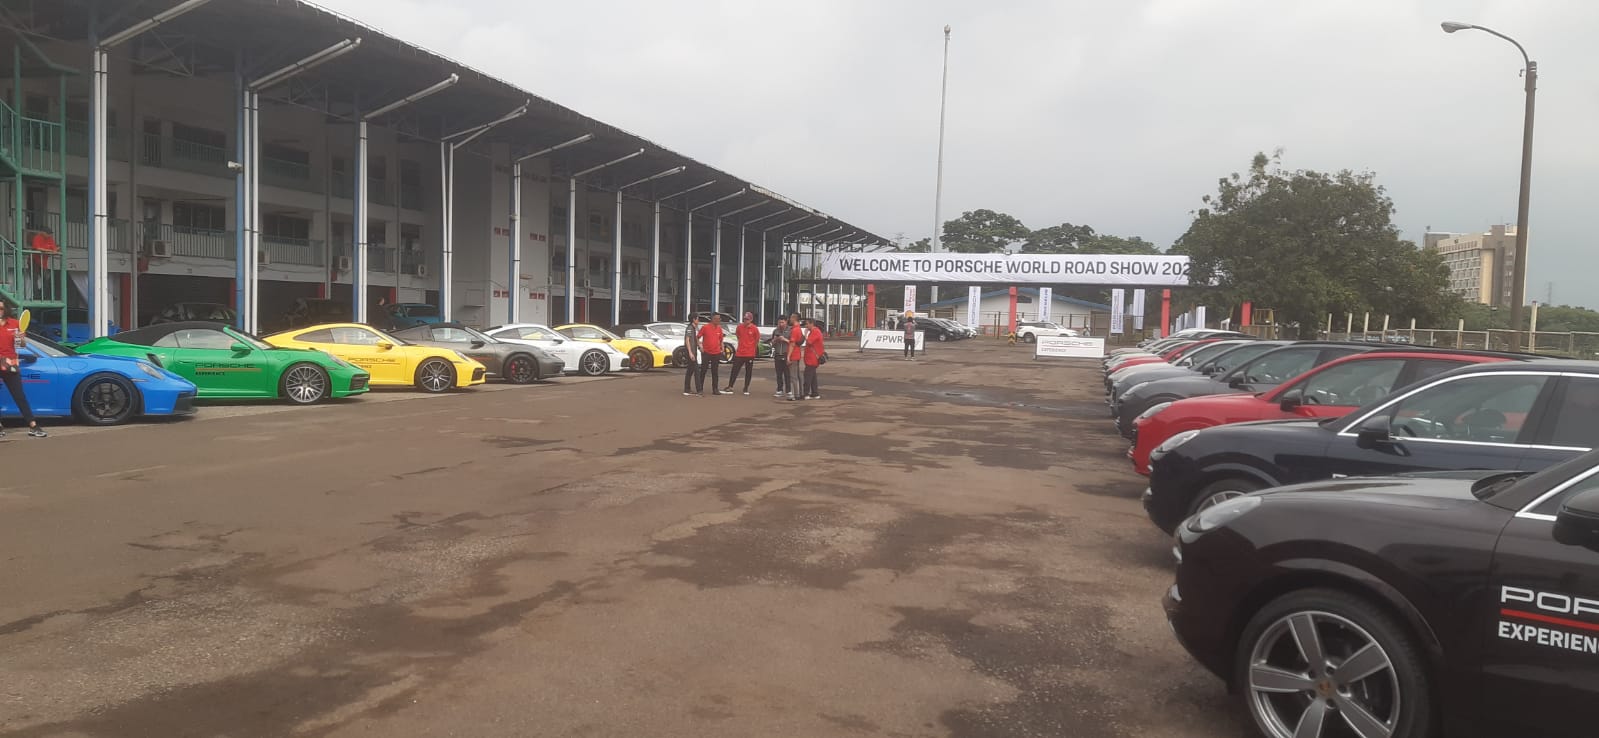 Porsche World Road Show Hadir Lagi di Indonesia, Tawarkan Sensasi Trek dan Off-Road